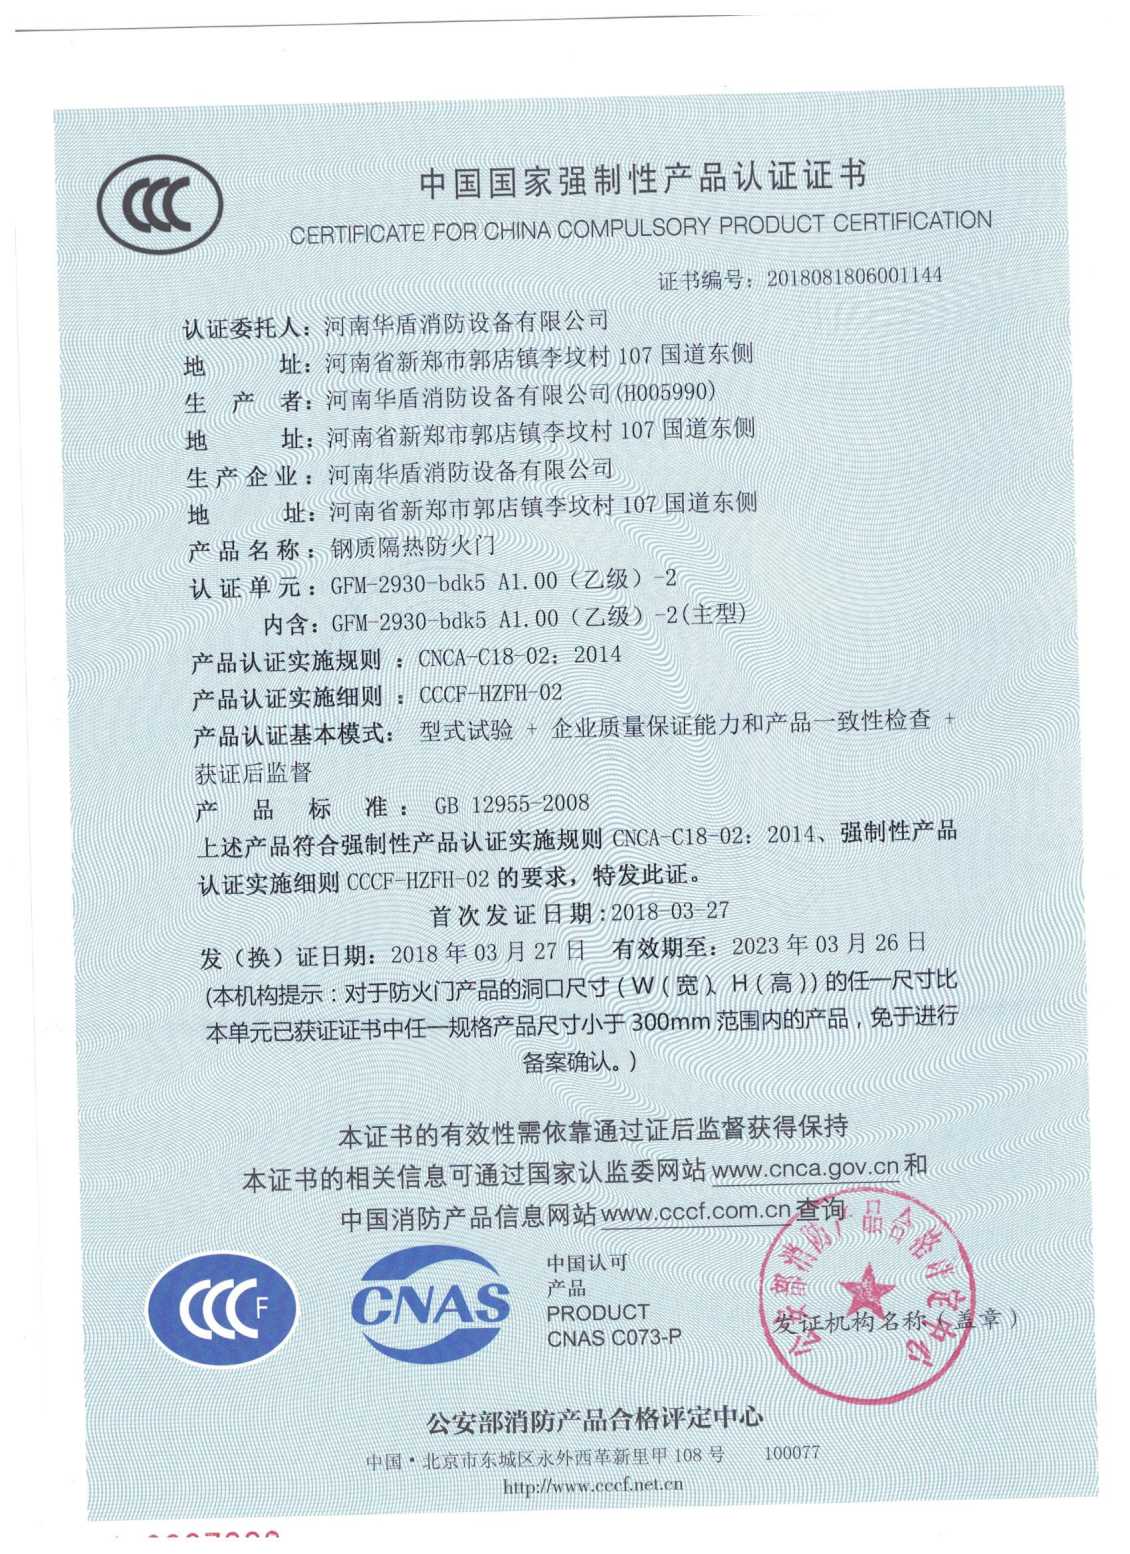 信阳超大防火门-3C证书/检验报告